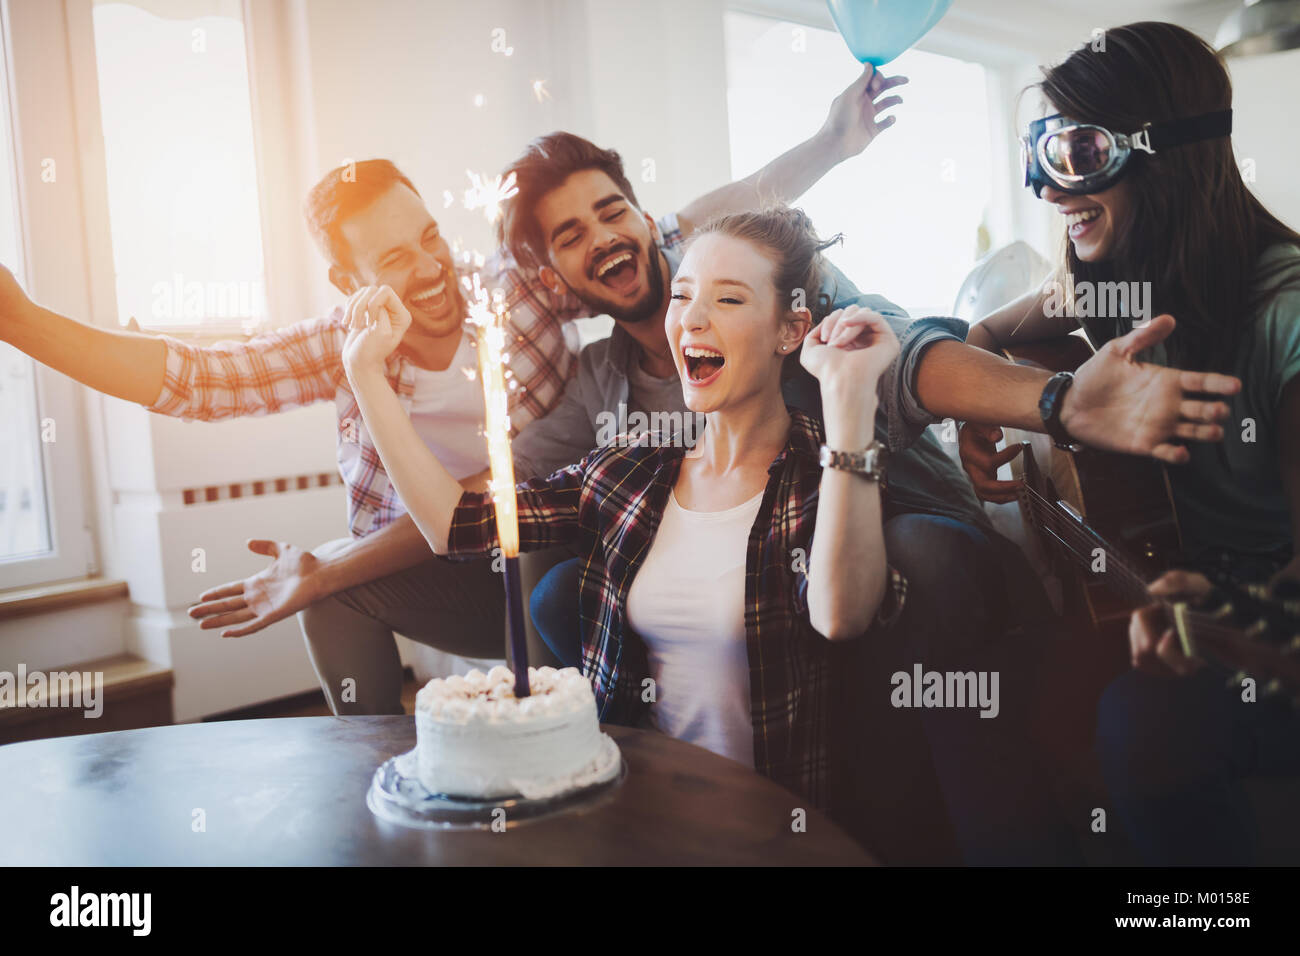 Jeune Groupe de happy friends celebrating birthday Banque D'Images